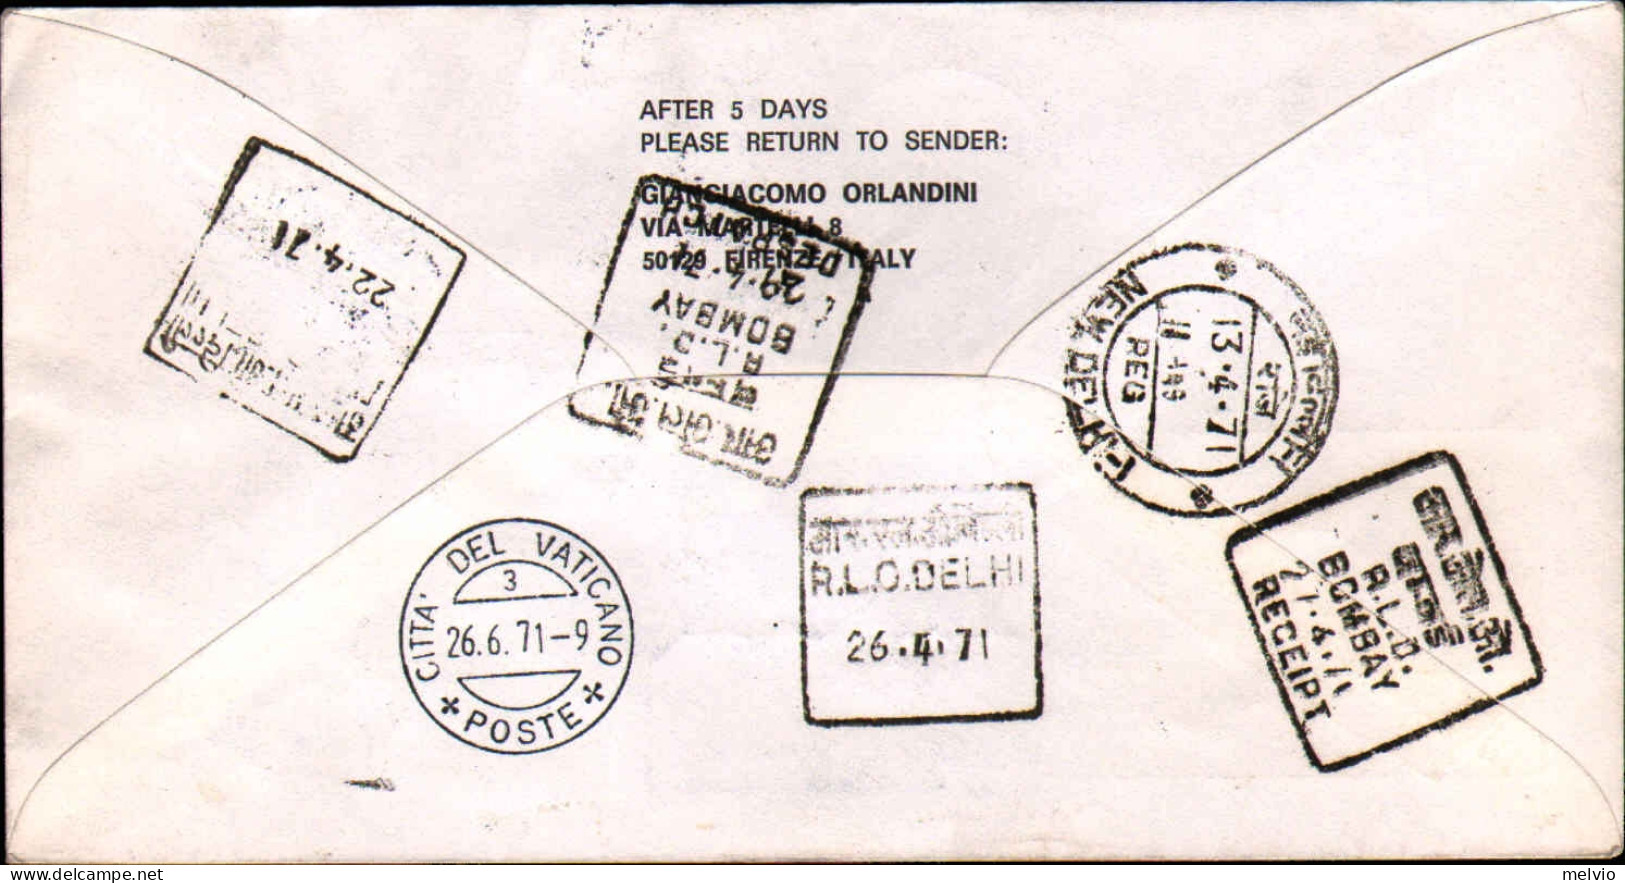 Vaticano-1971 Stampe Raccomandata Per Via Aerea Alitalia I^volo Roma-New Delhi,a - Aéreo